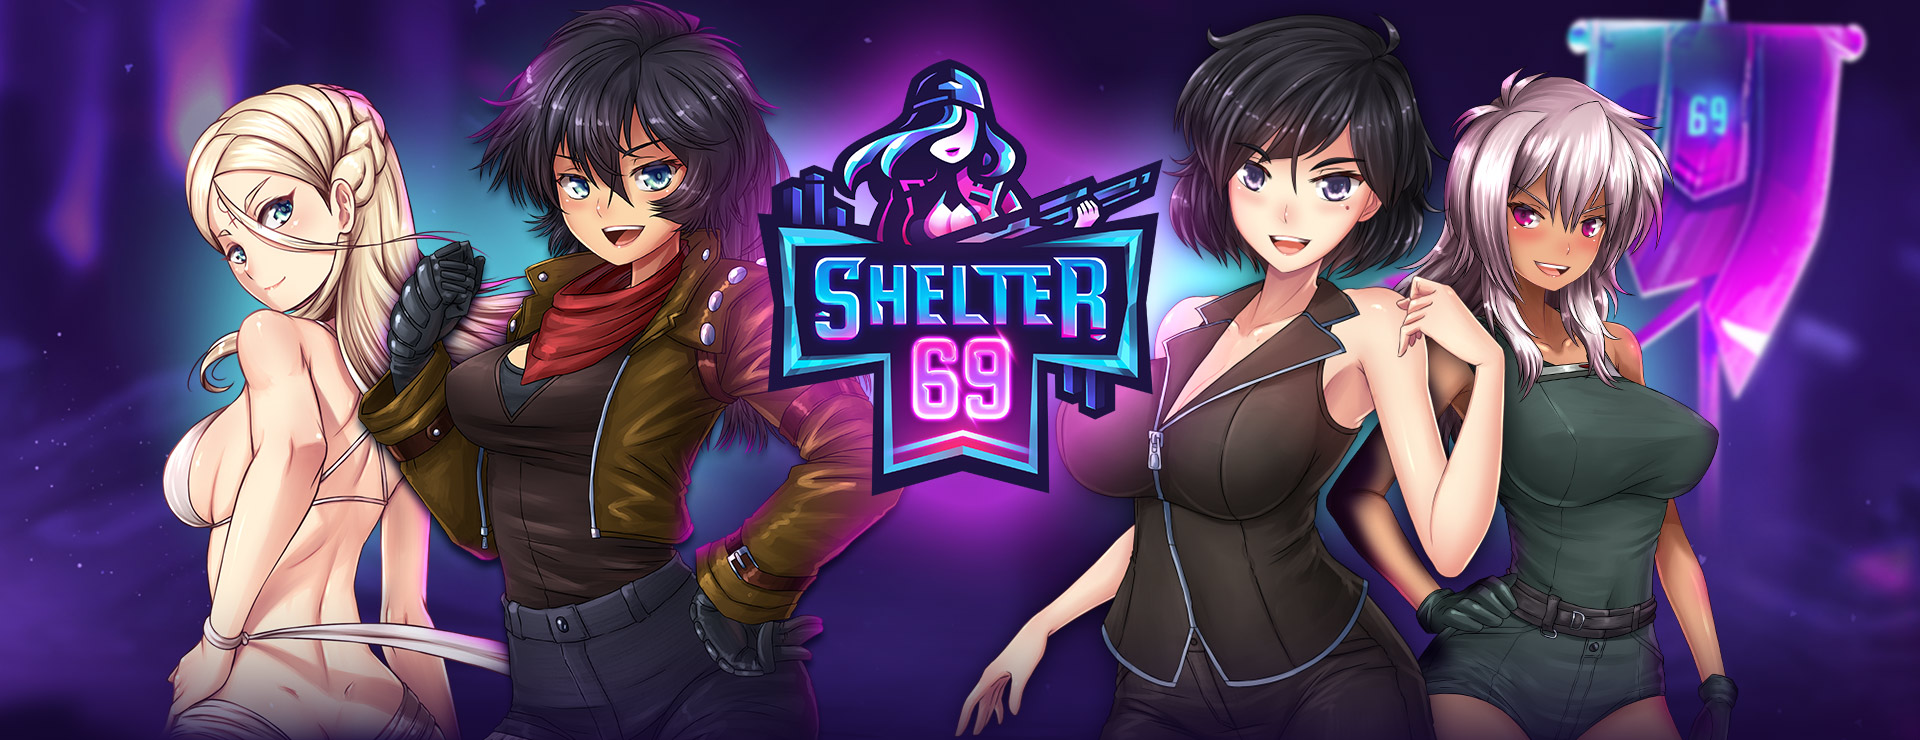 Shelter 69 Game - シミュレーション ゲーム